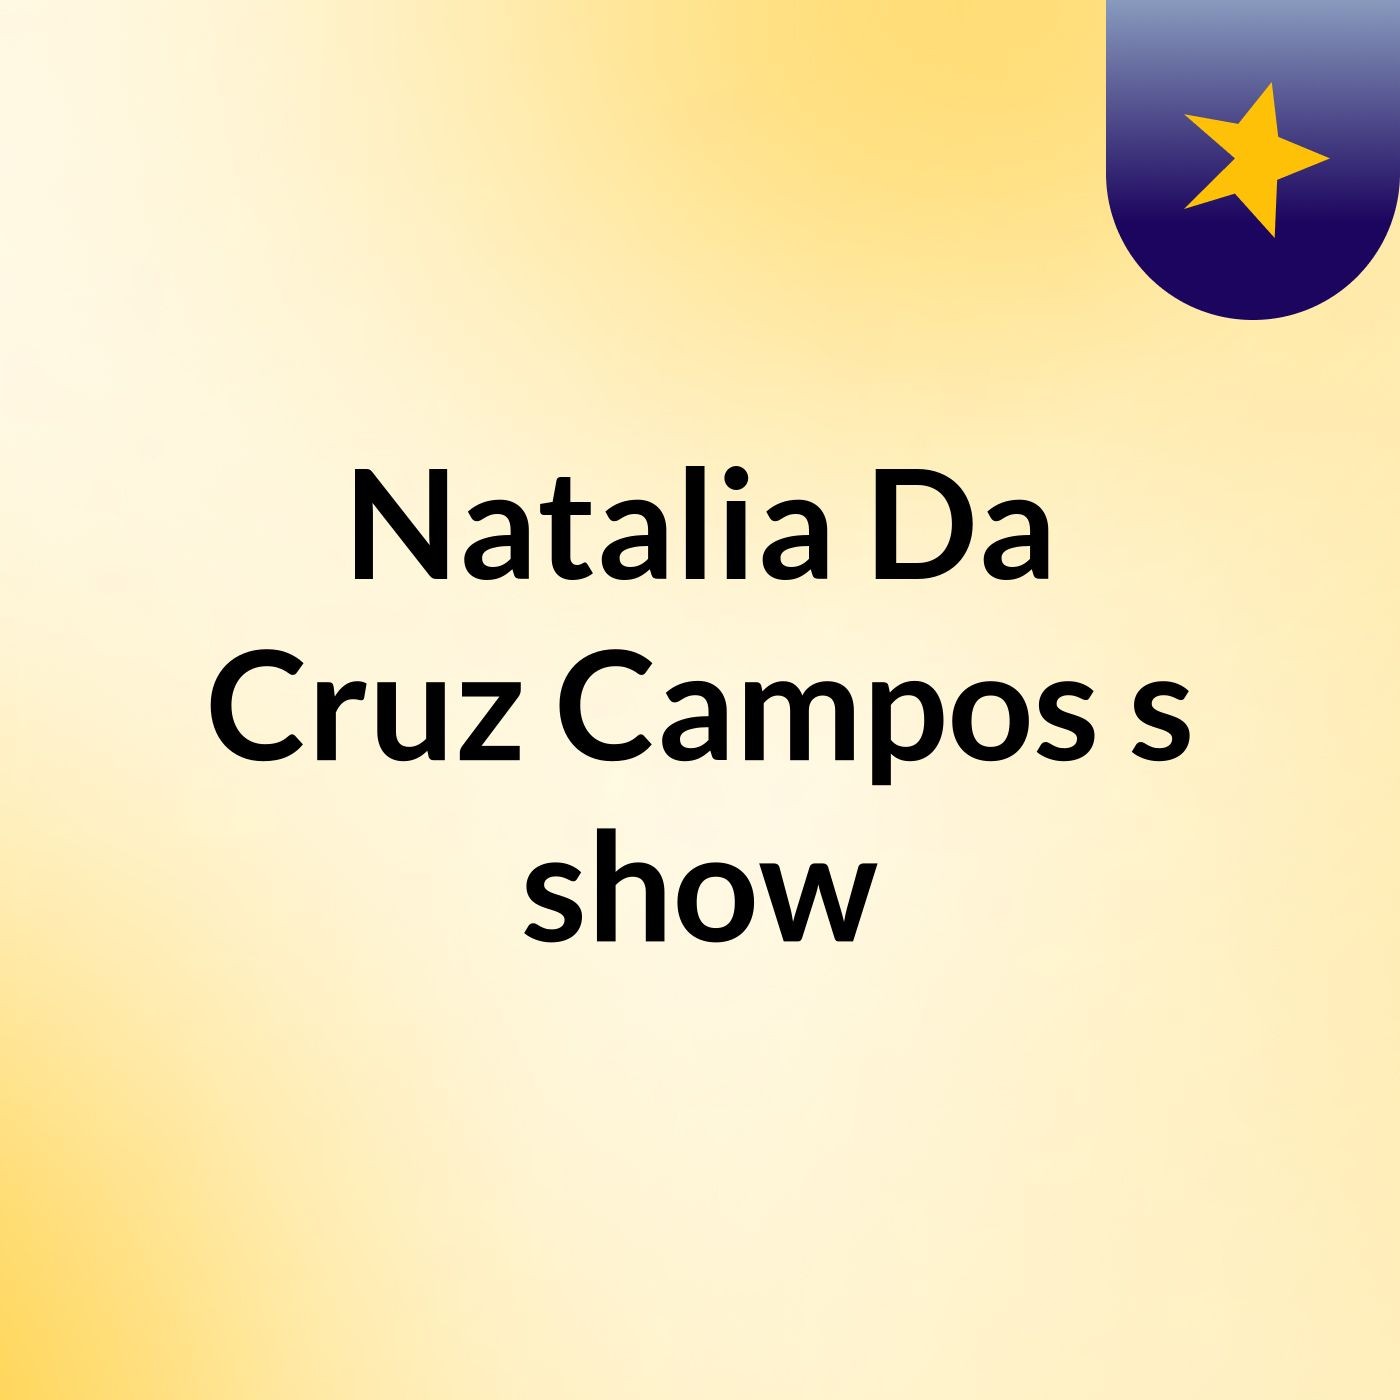 Natalia Da Cruz Campos's show